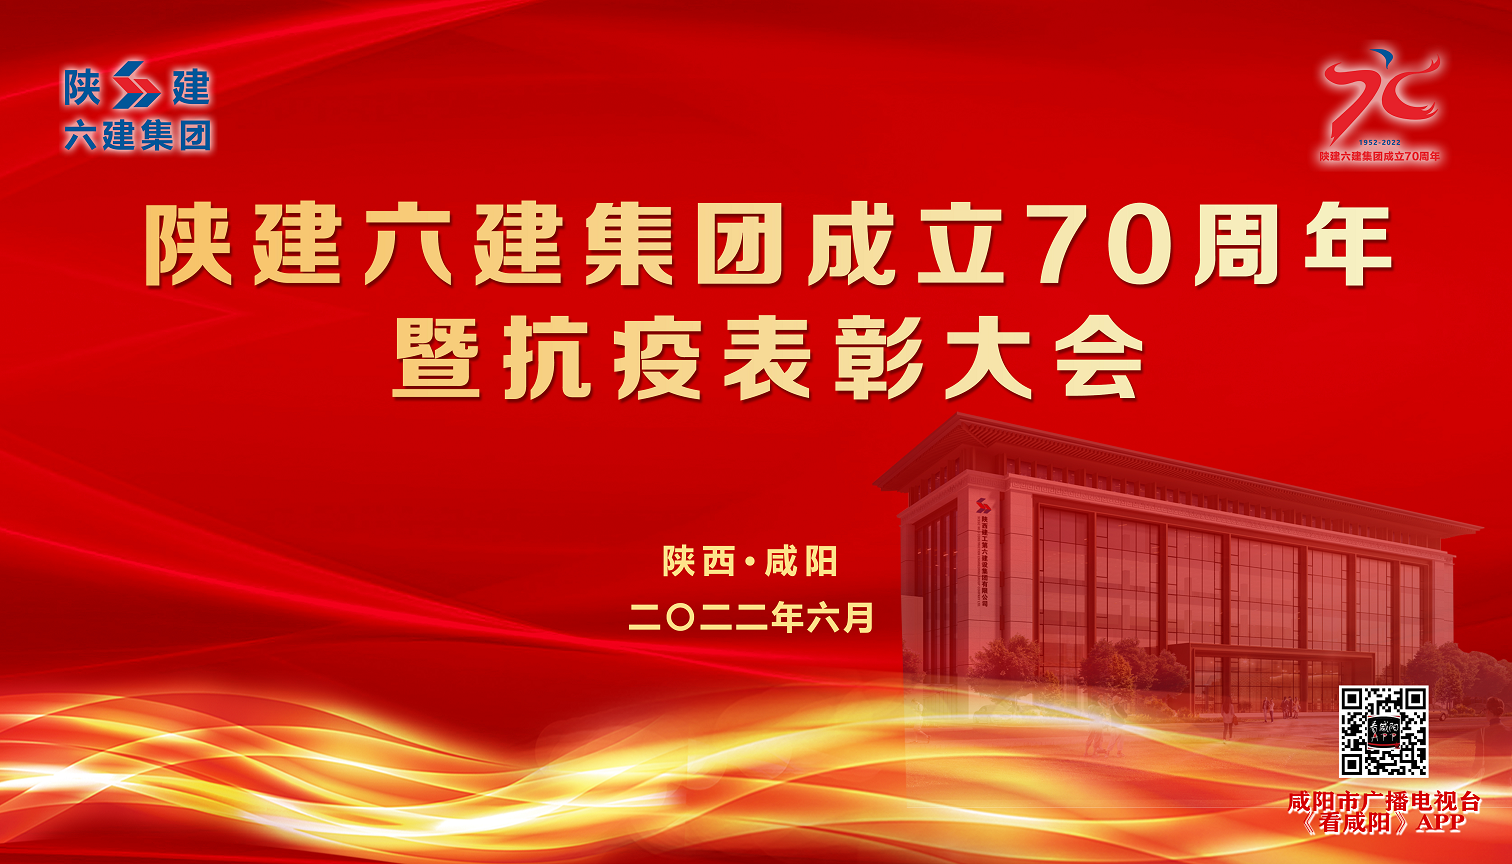 【直播回看】陕建六建集团成立70周年暨抗疫表彰大会